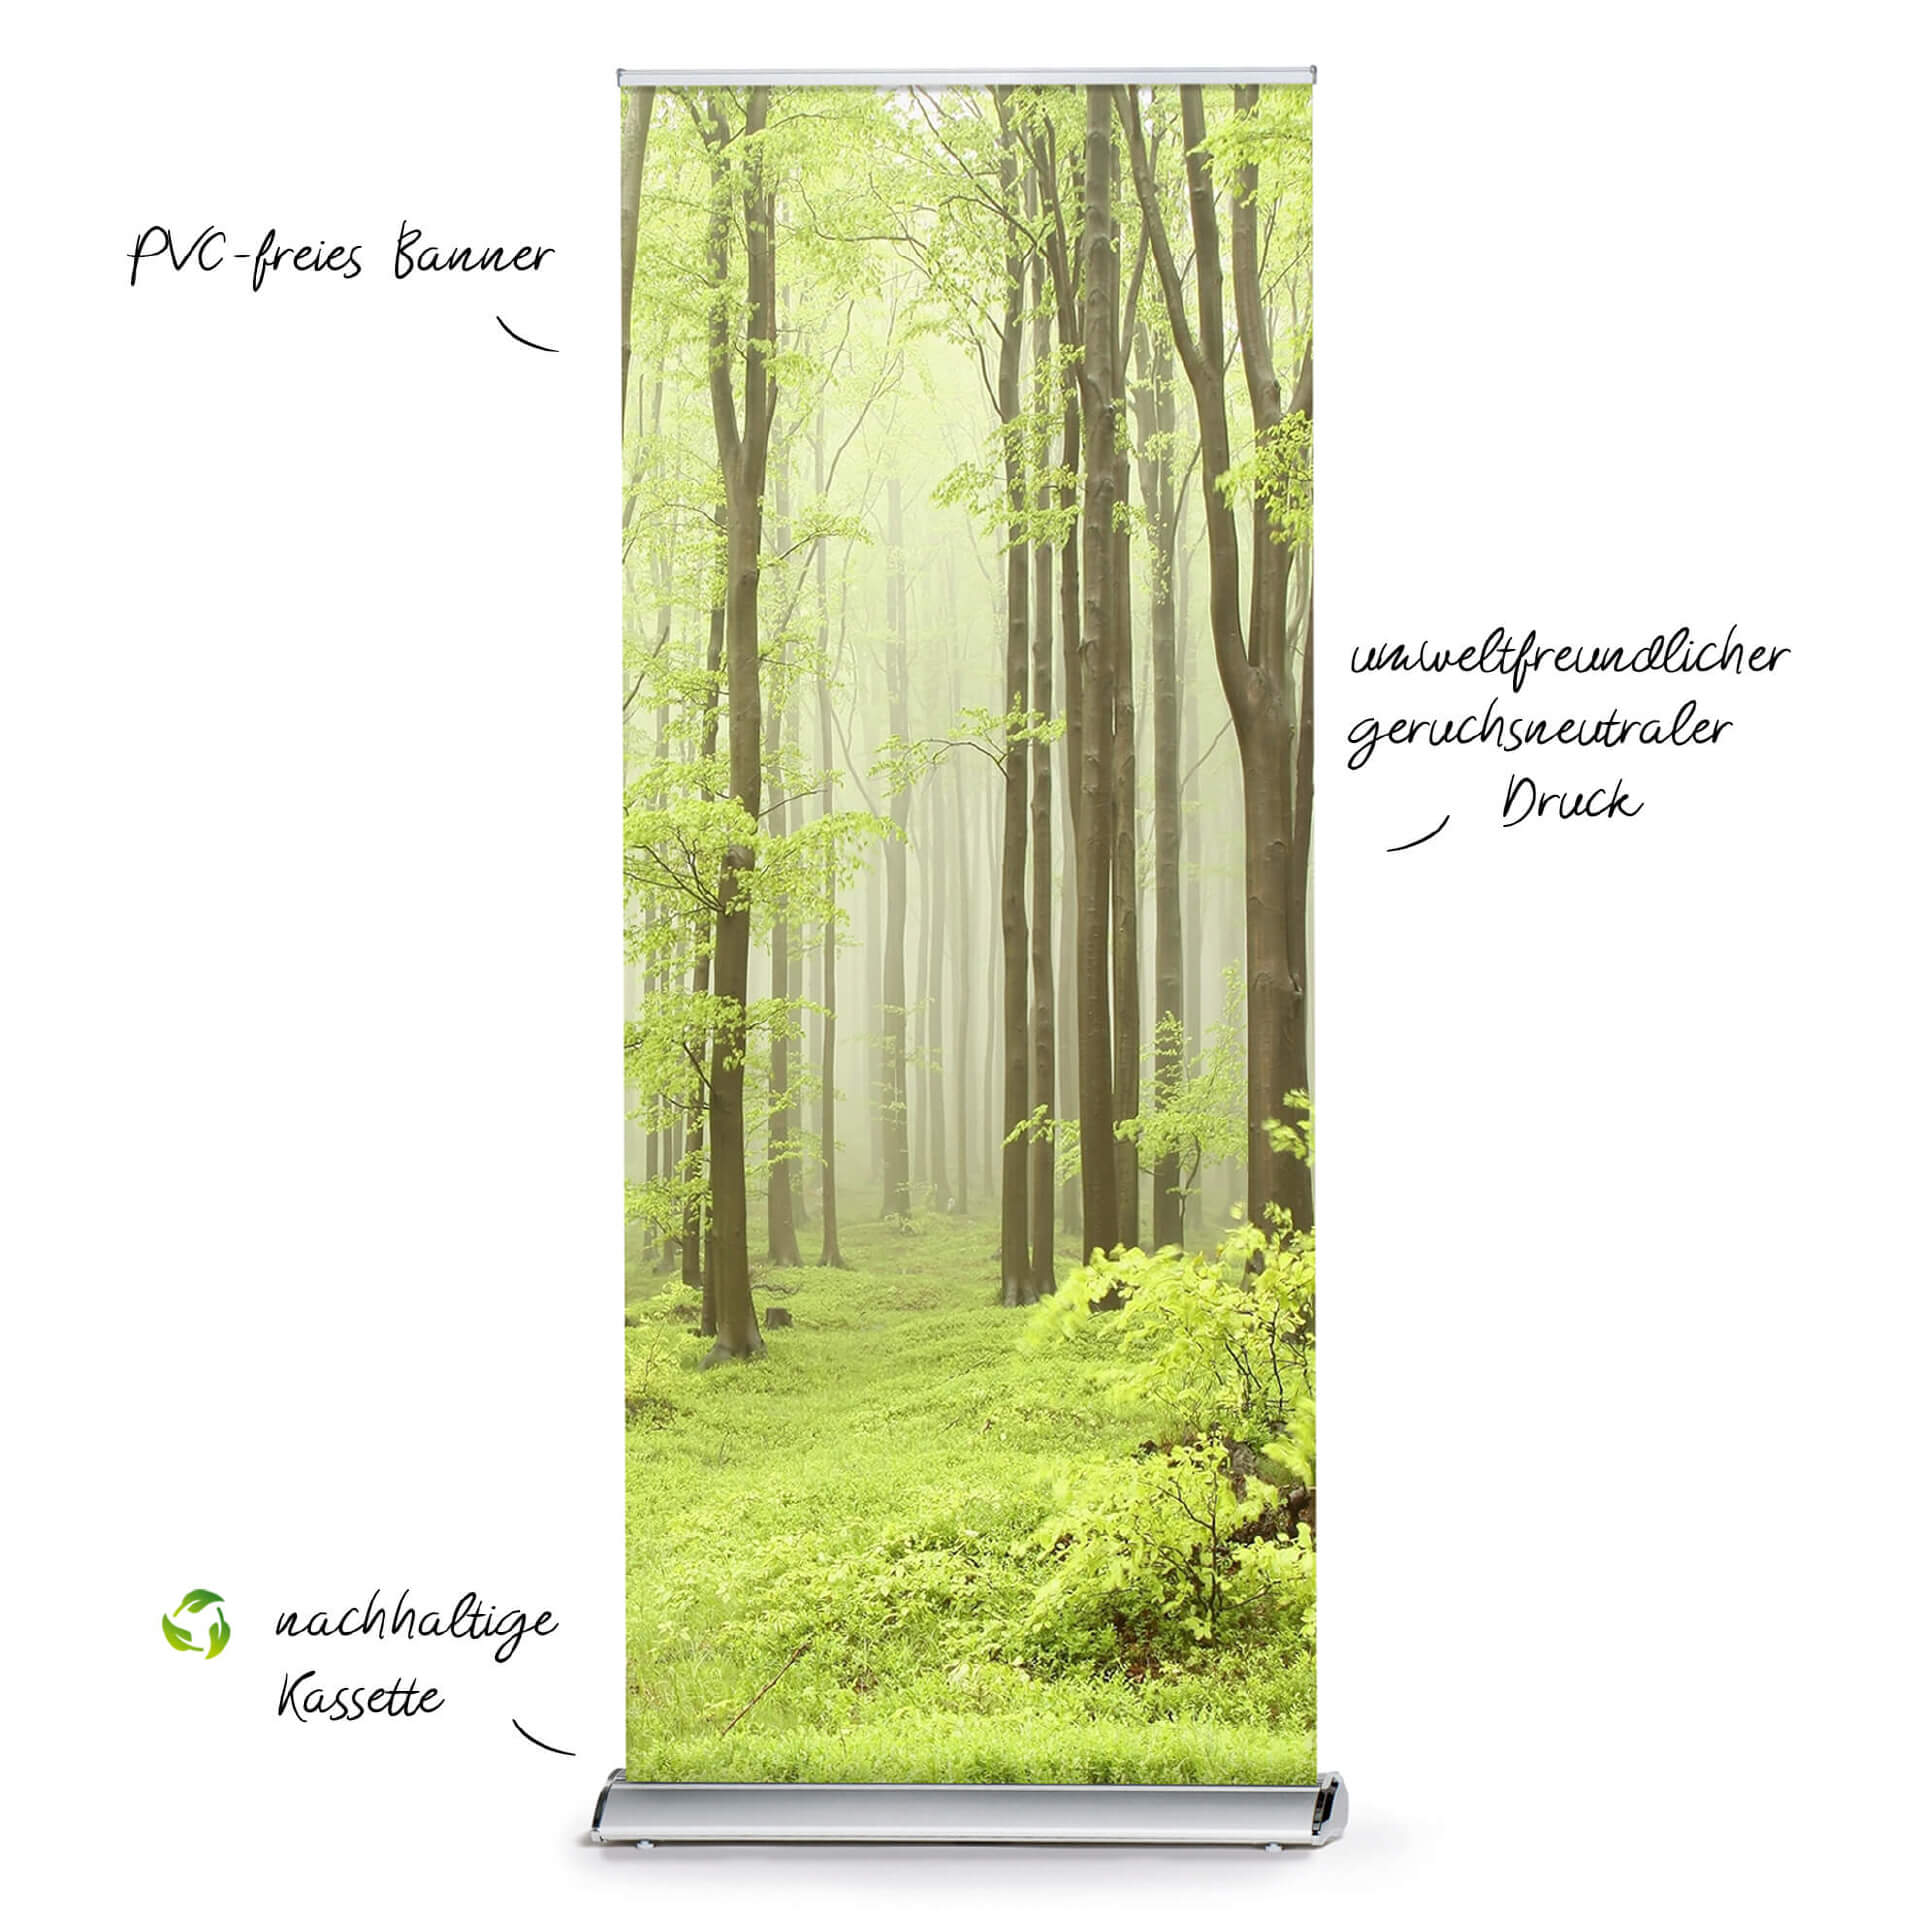 Roll up Display Greenline 3 - nachhaltige Roll up Kassette mit umweltfreundlichem Druck auf PVC freiem Banner